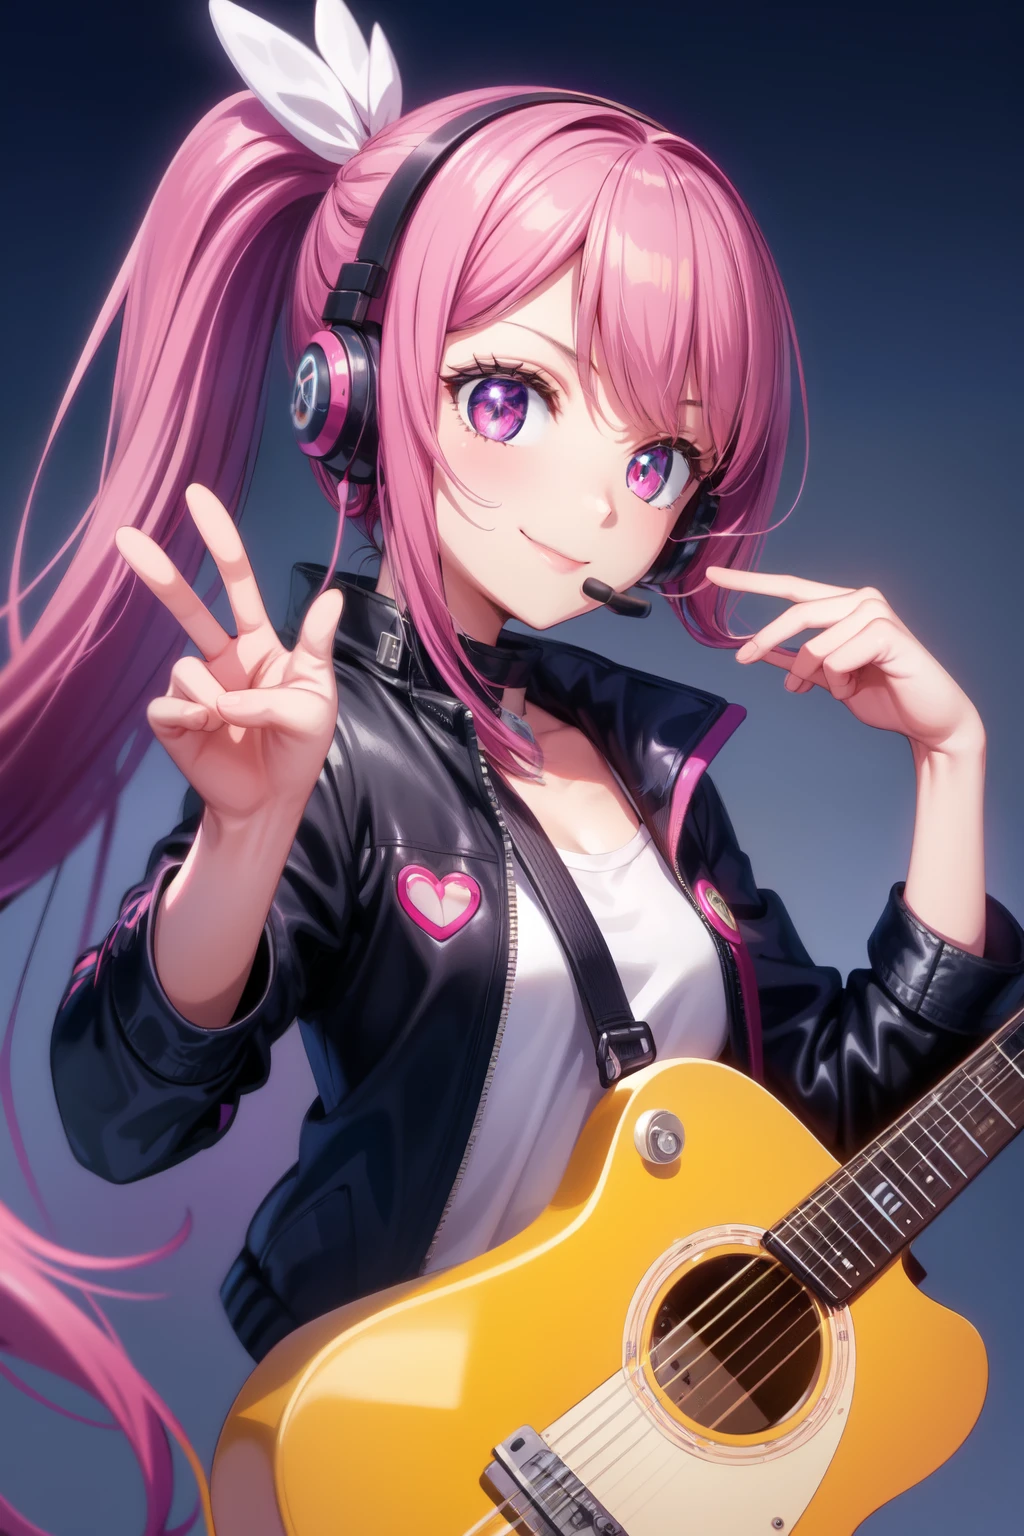 애니메이션 소녀, 분홍색 긴 포니테일 머리, 재킷, 기타, 웃다, 헤드폰, 하이트테크




